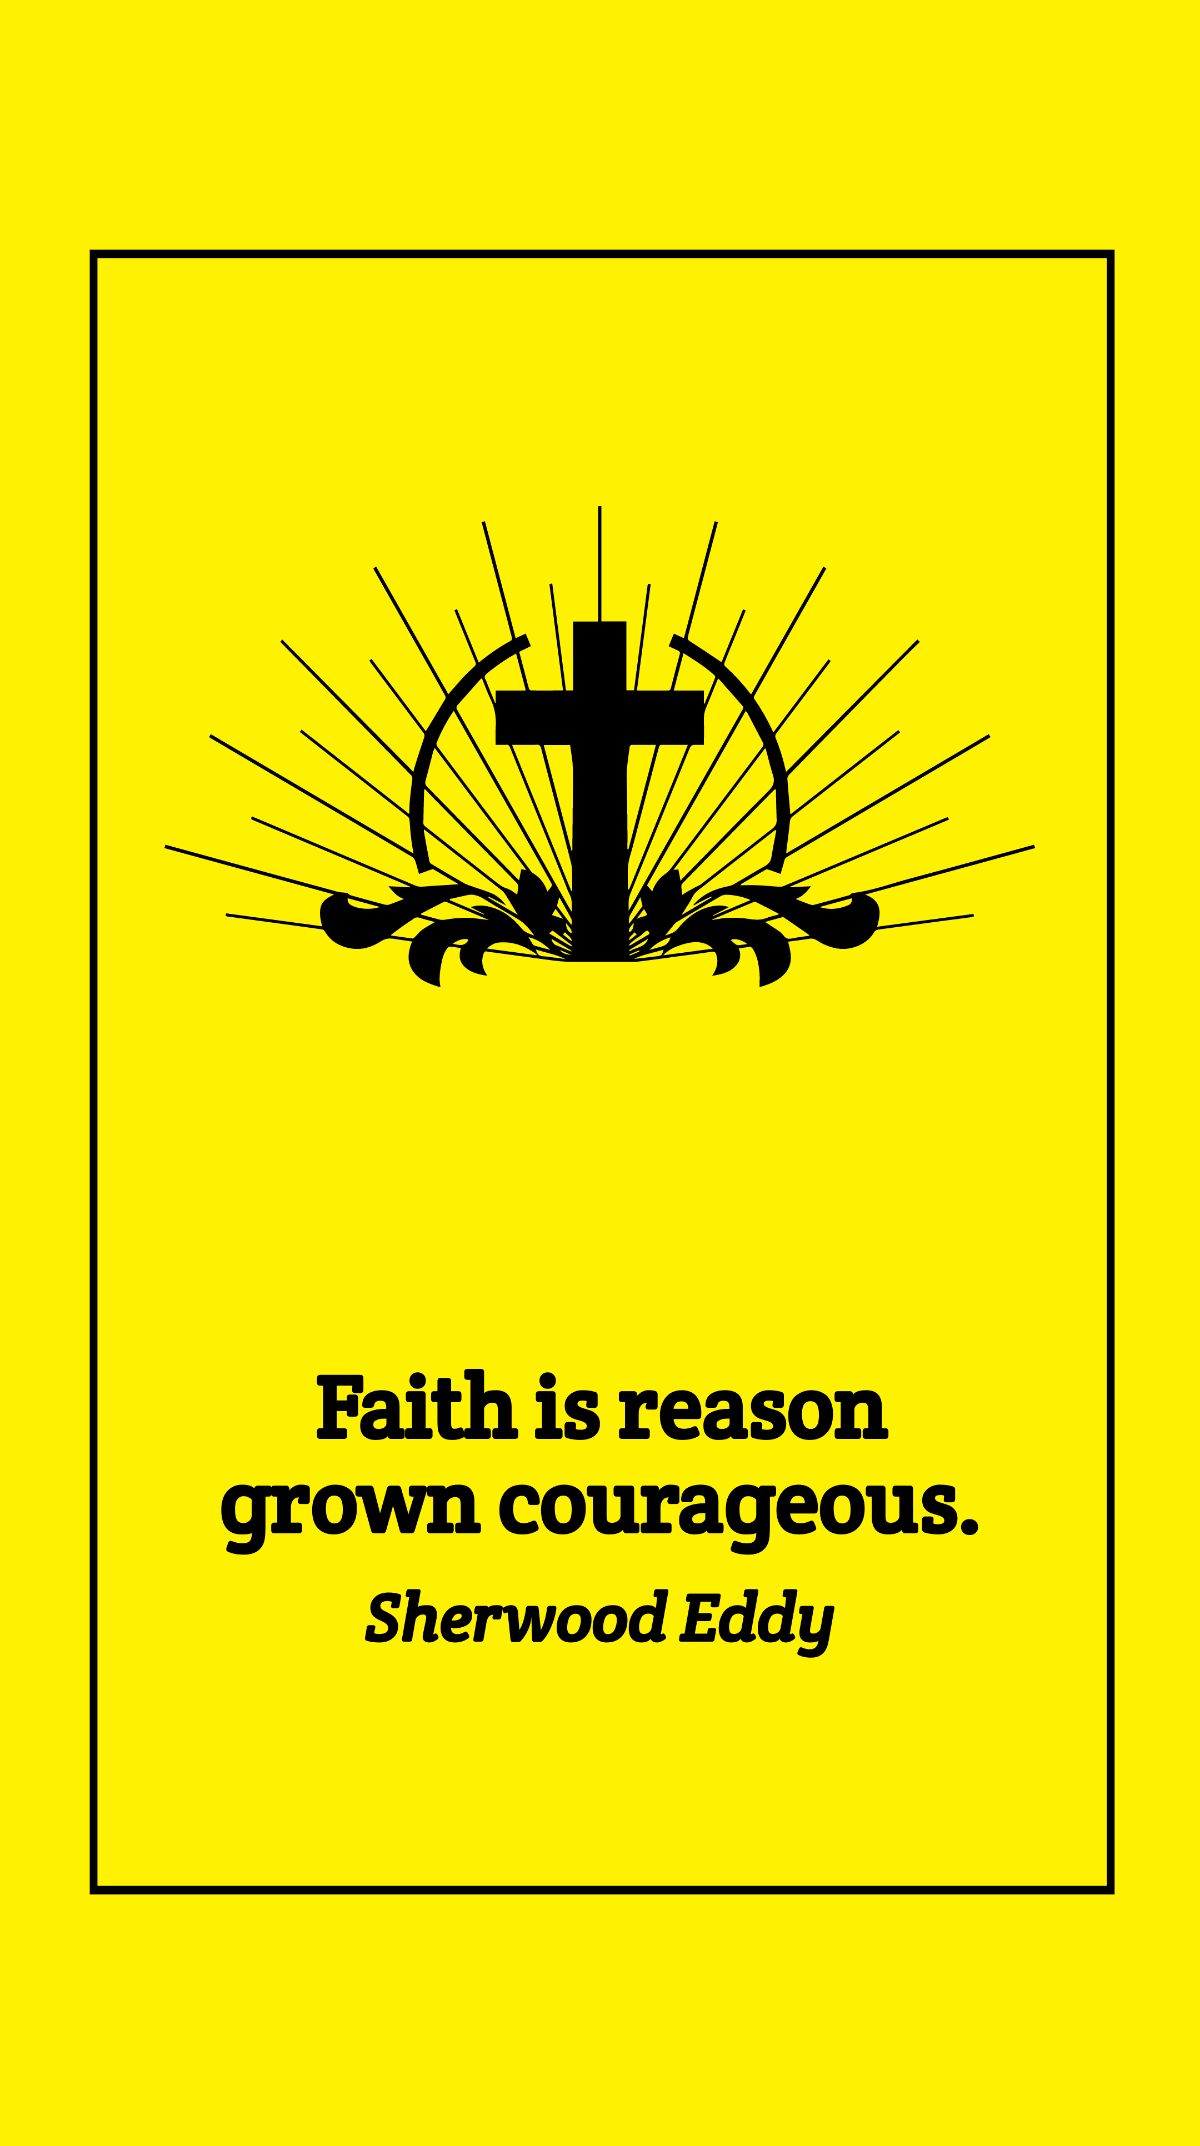 Sherwood Eddy - Faith is reason grown courageous.